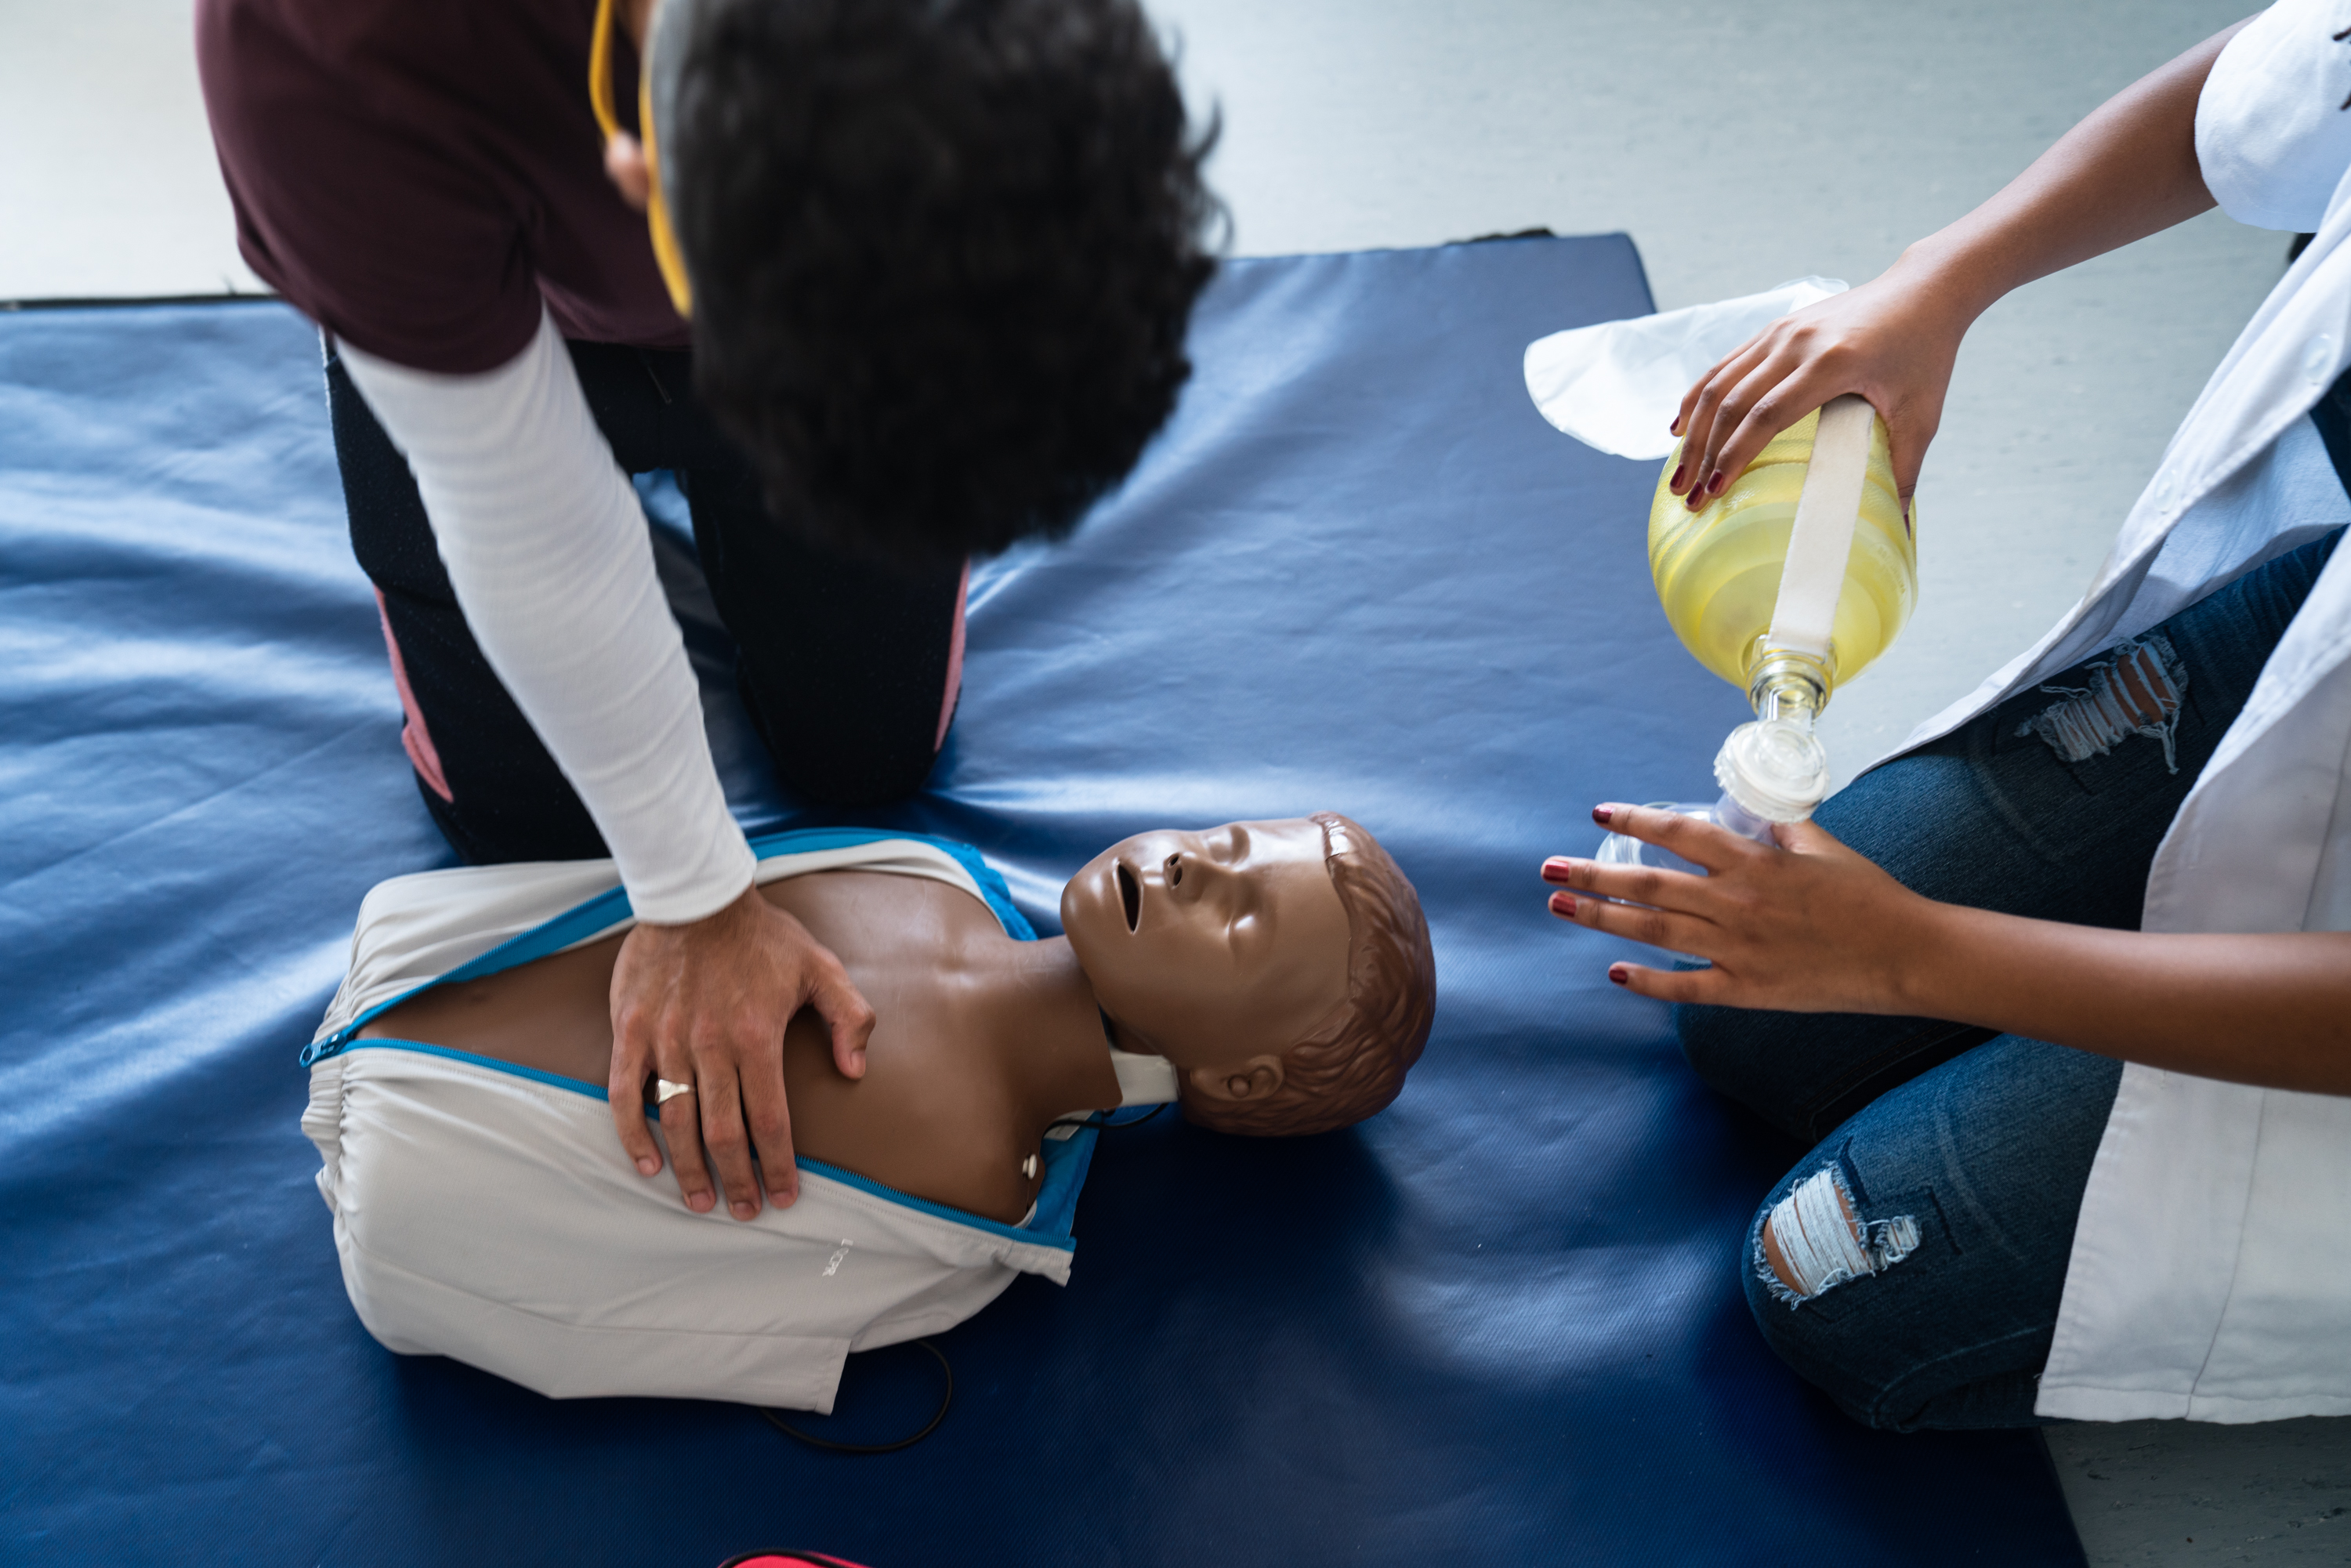 Practicing paediatric resuscitation techniques